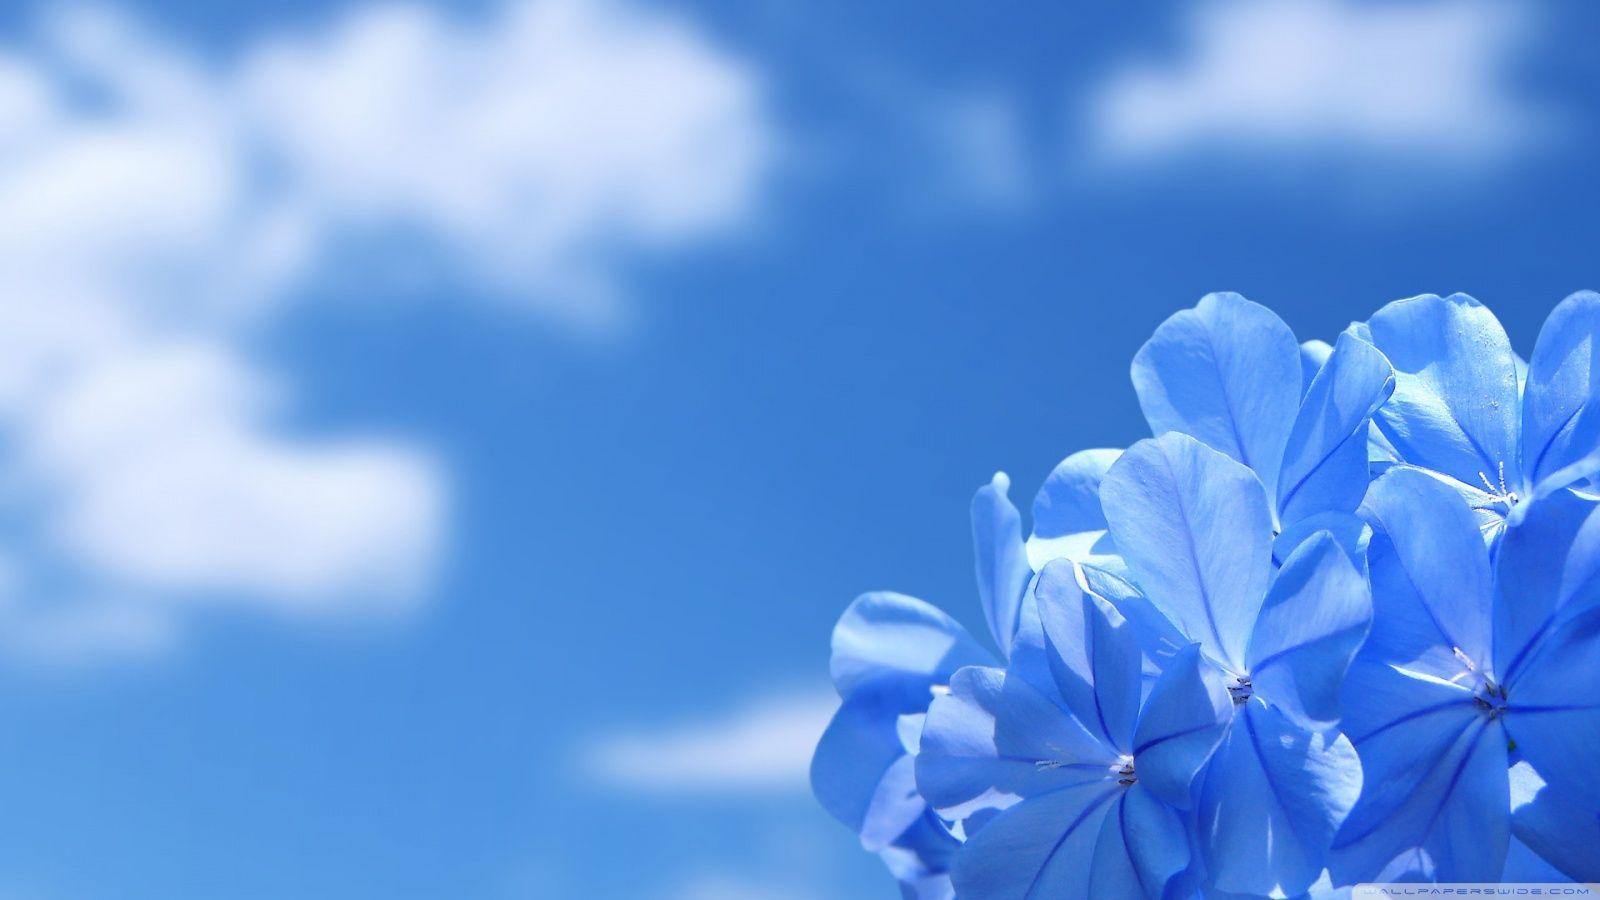 Blue Flowers HD desktop wallpaper, Widescreen, High Definition